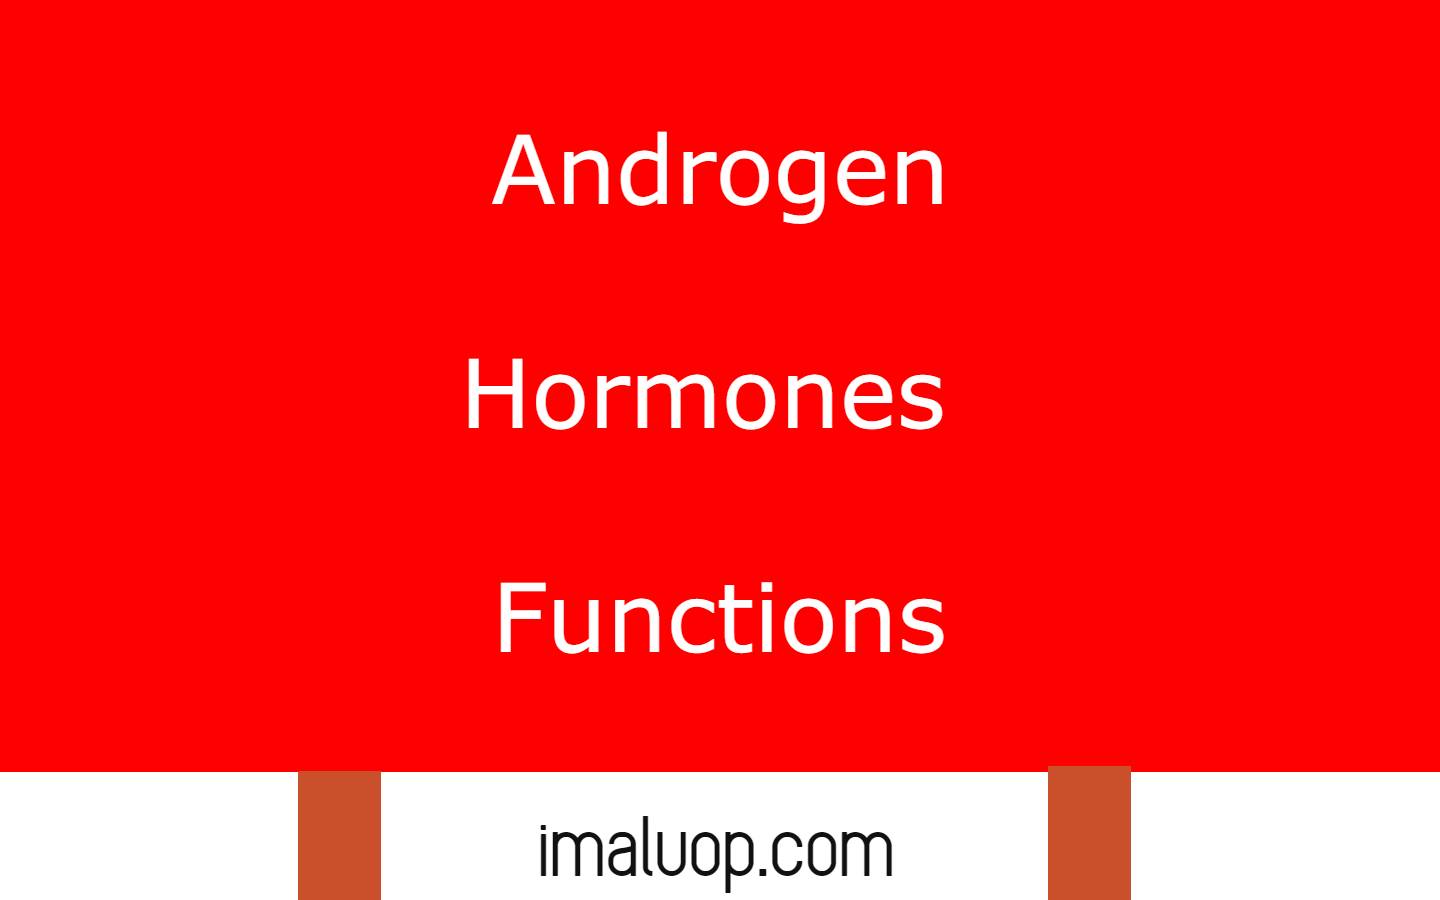 Androgen Hormones Functions